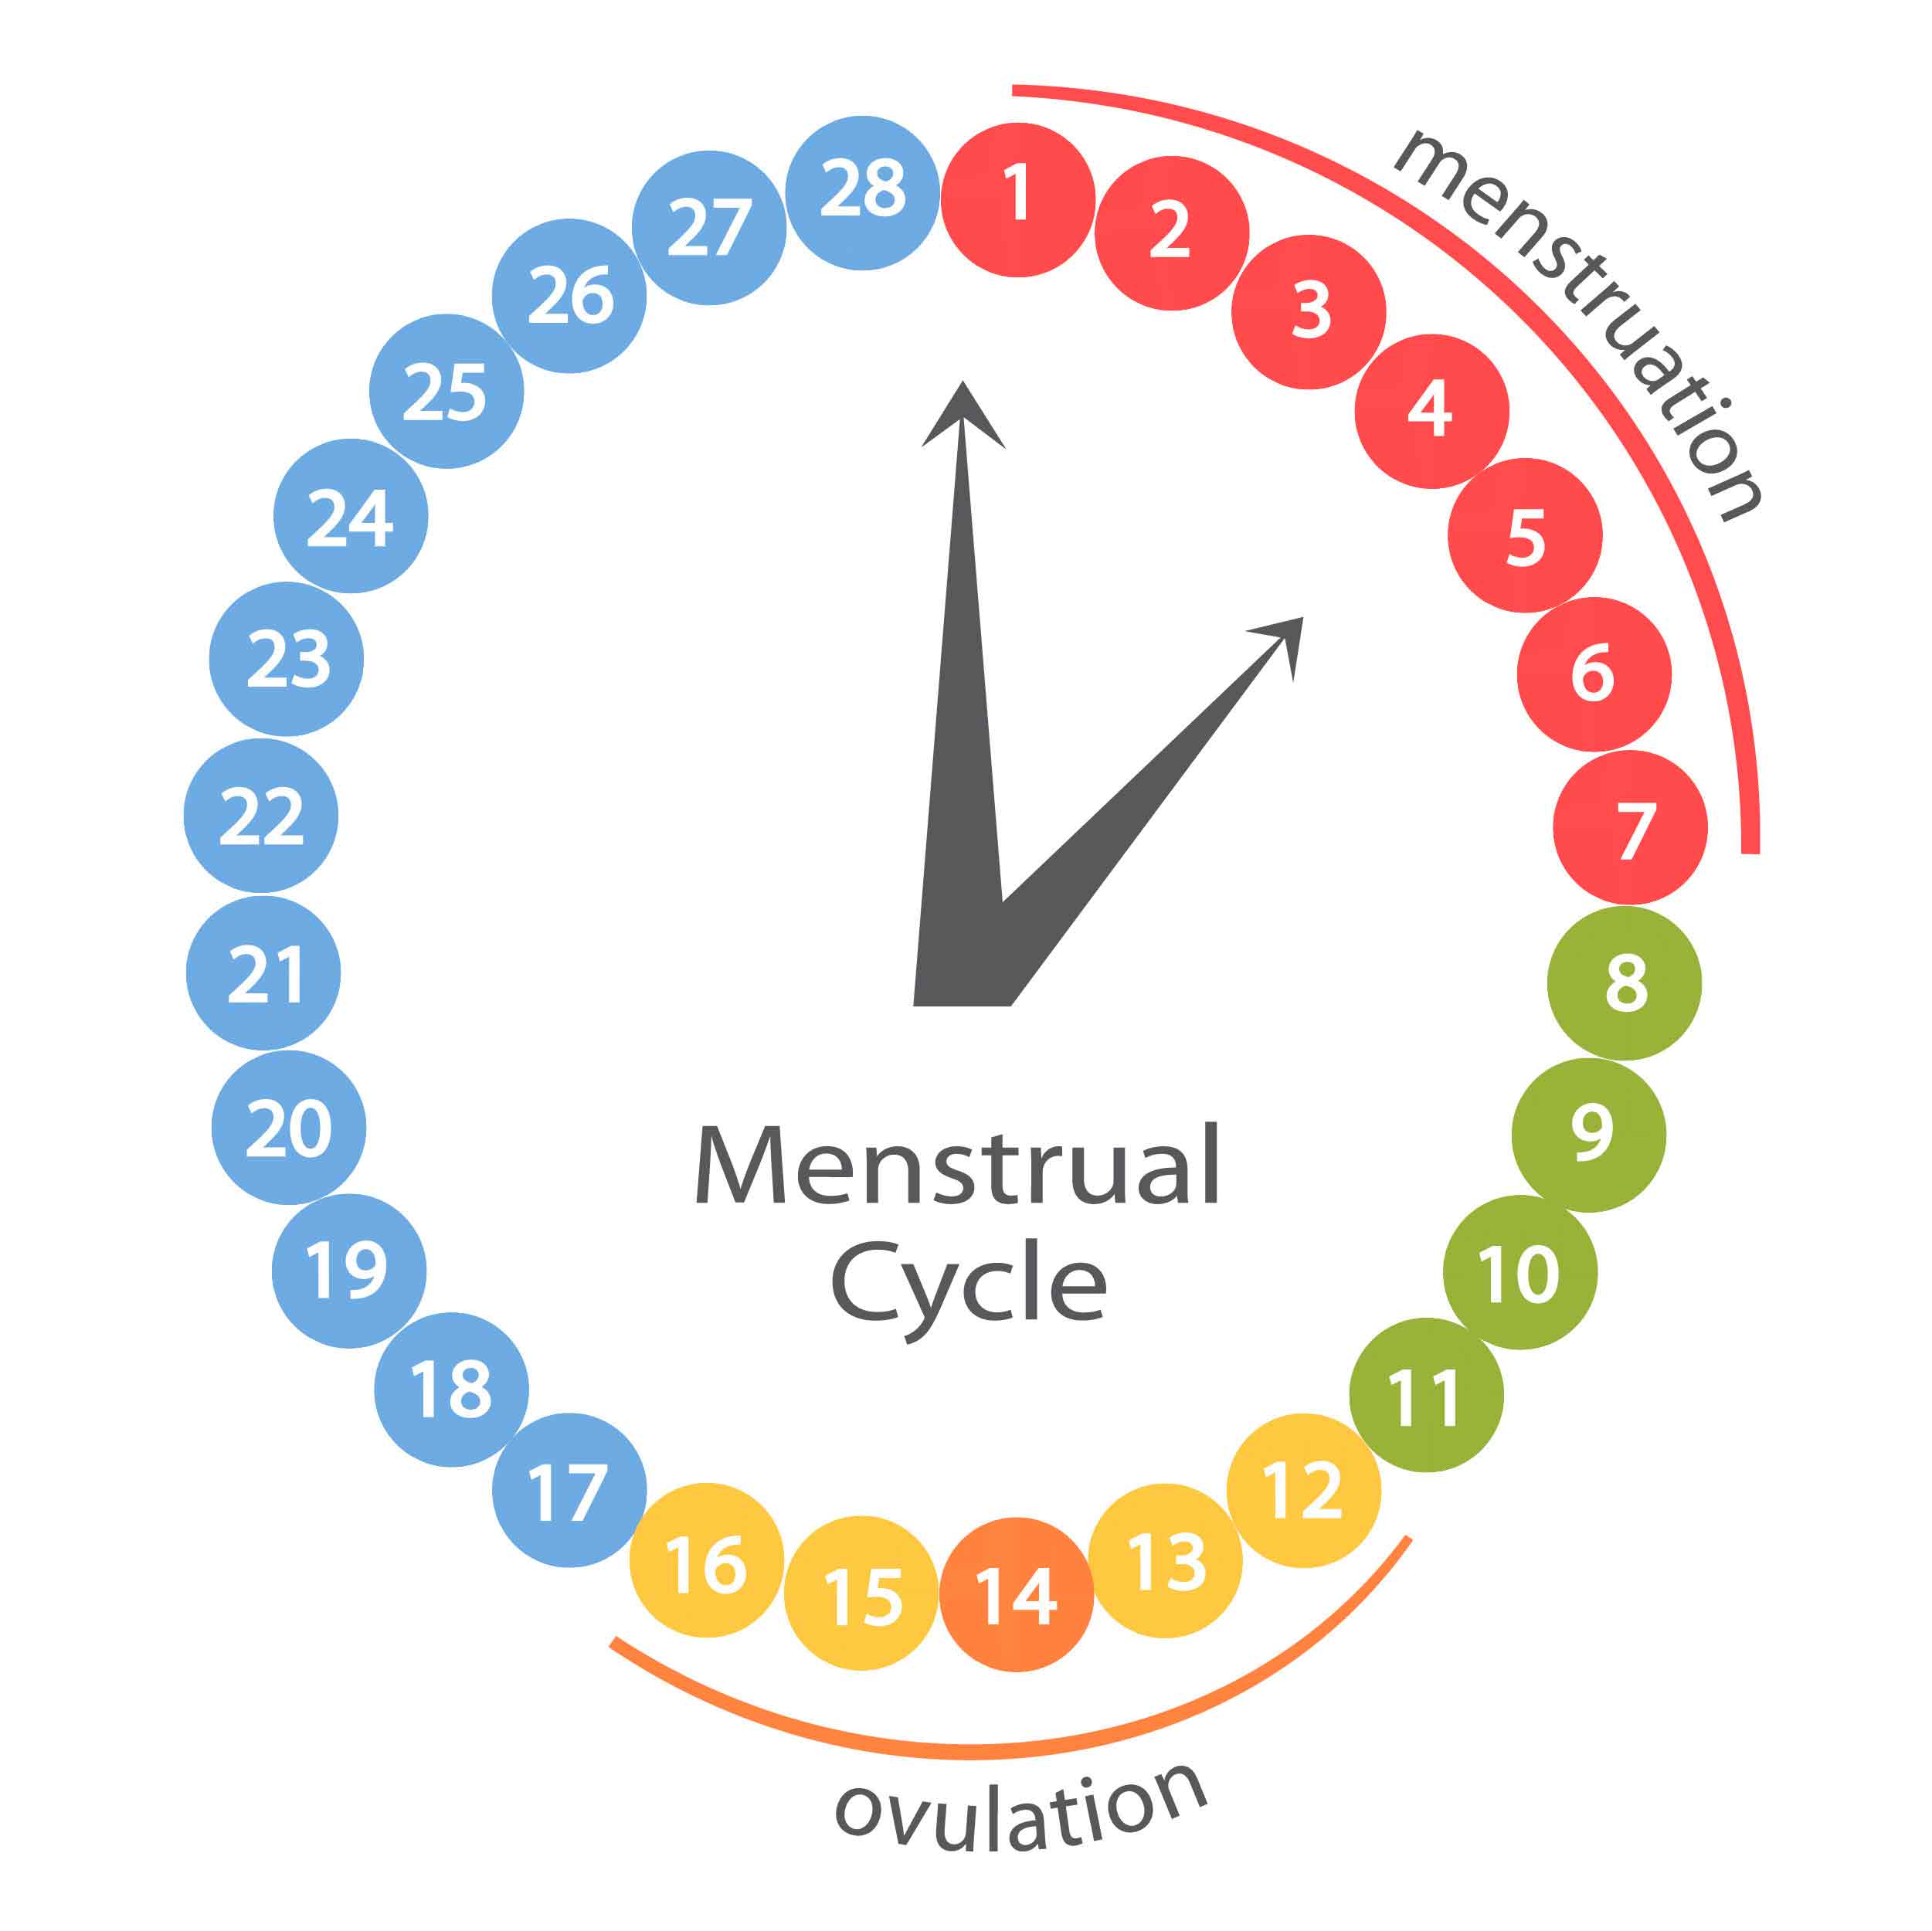 27 цикл месячных. Менструальный цикл. Менструальныменструальный Уикд. Циклцикл менструальный. Цикл менструационного цикла.